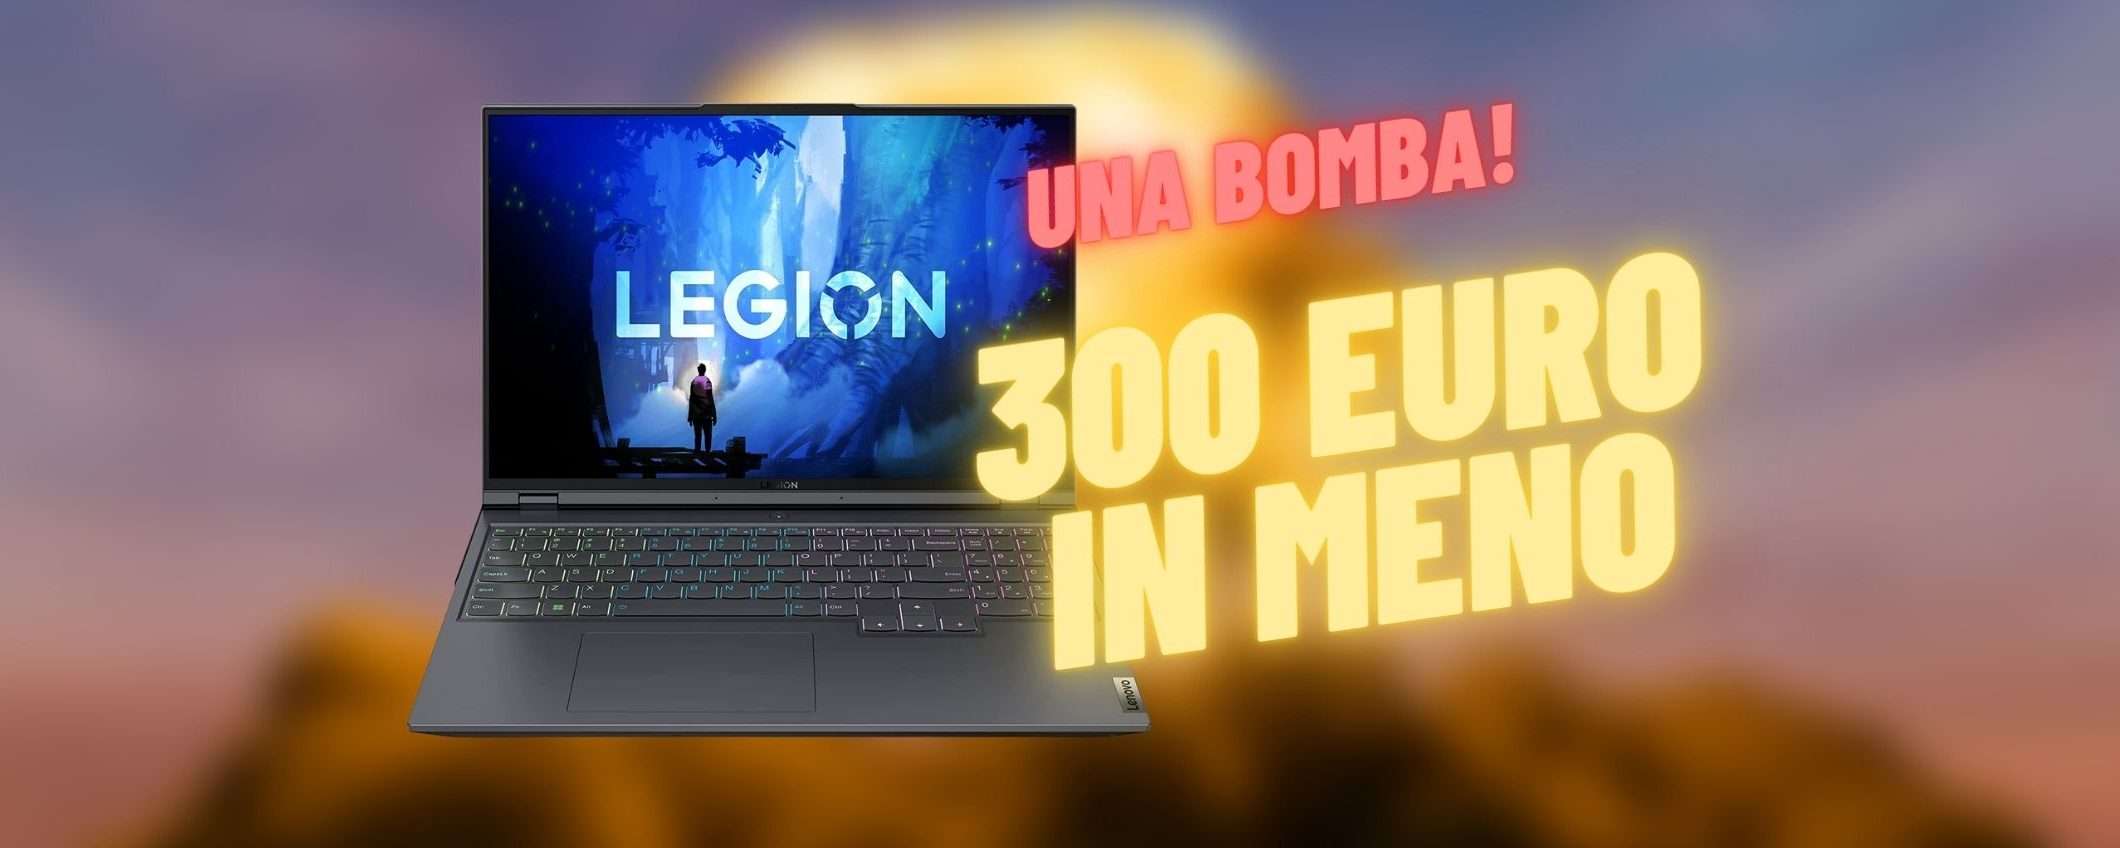 Lenovo Legion 5 Pro: notebook da gioco MOSTRUOSO con 300 euro di sconto